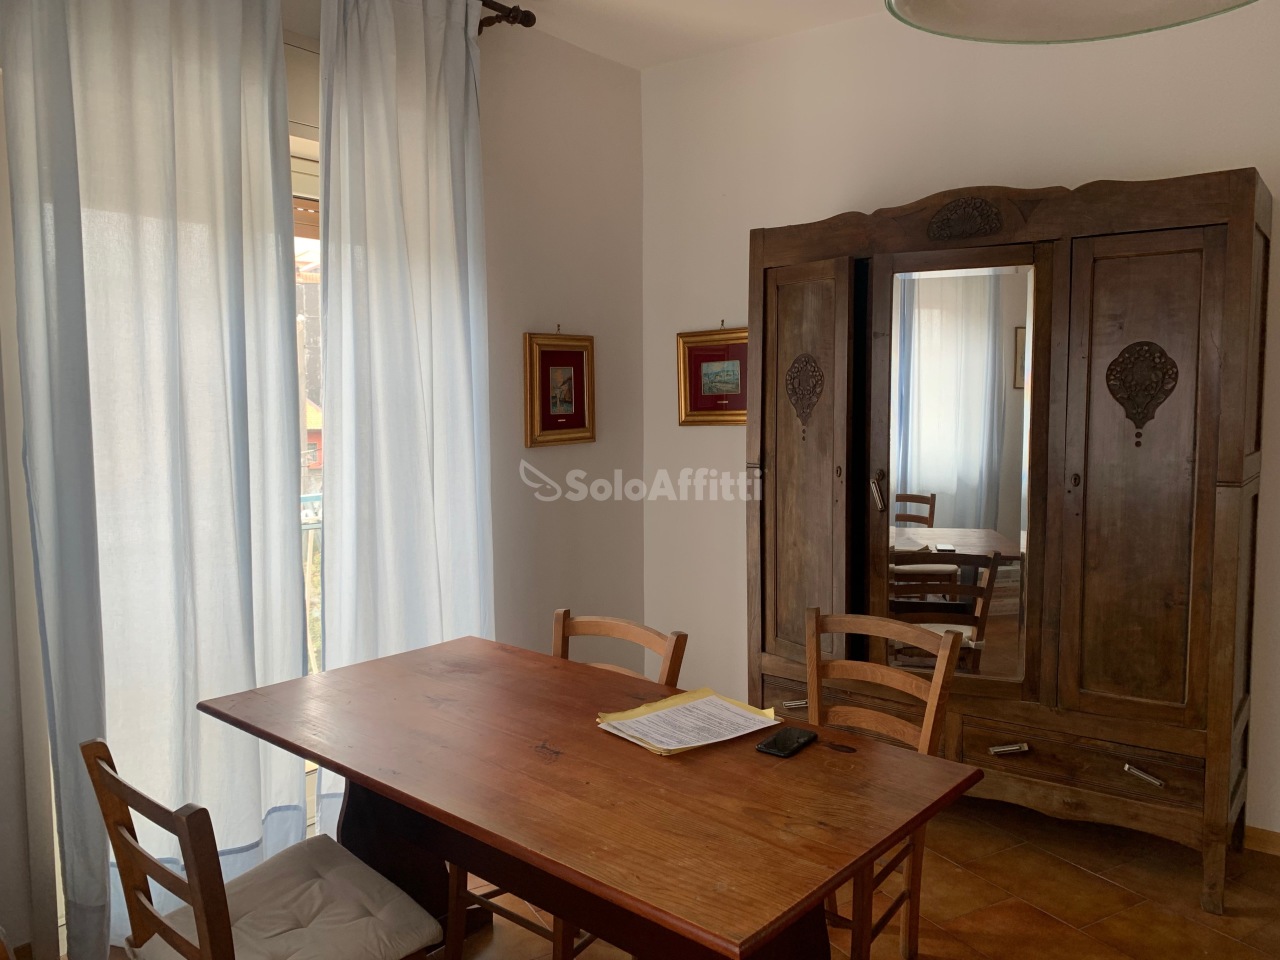 Appartamento in affitto a Aci Sant'Antonio, 3 locali, prezzo € 450 | PortaleAgenzieImmobiliari.it